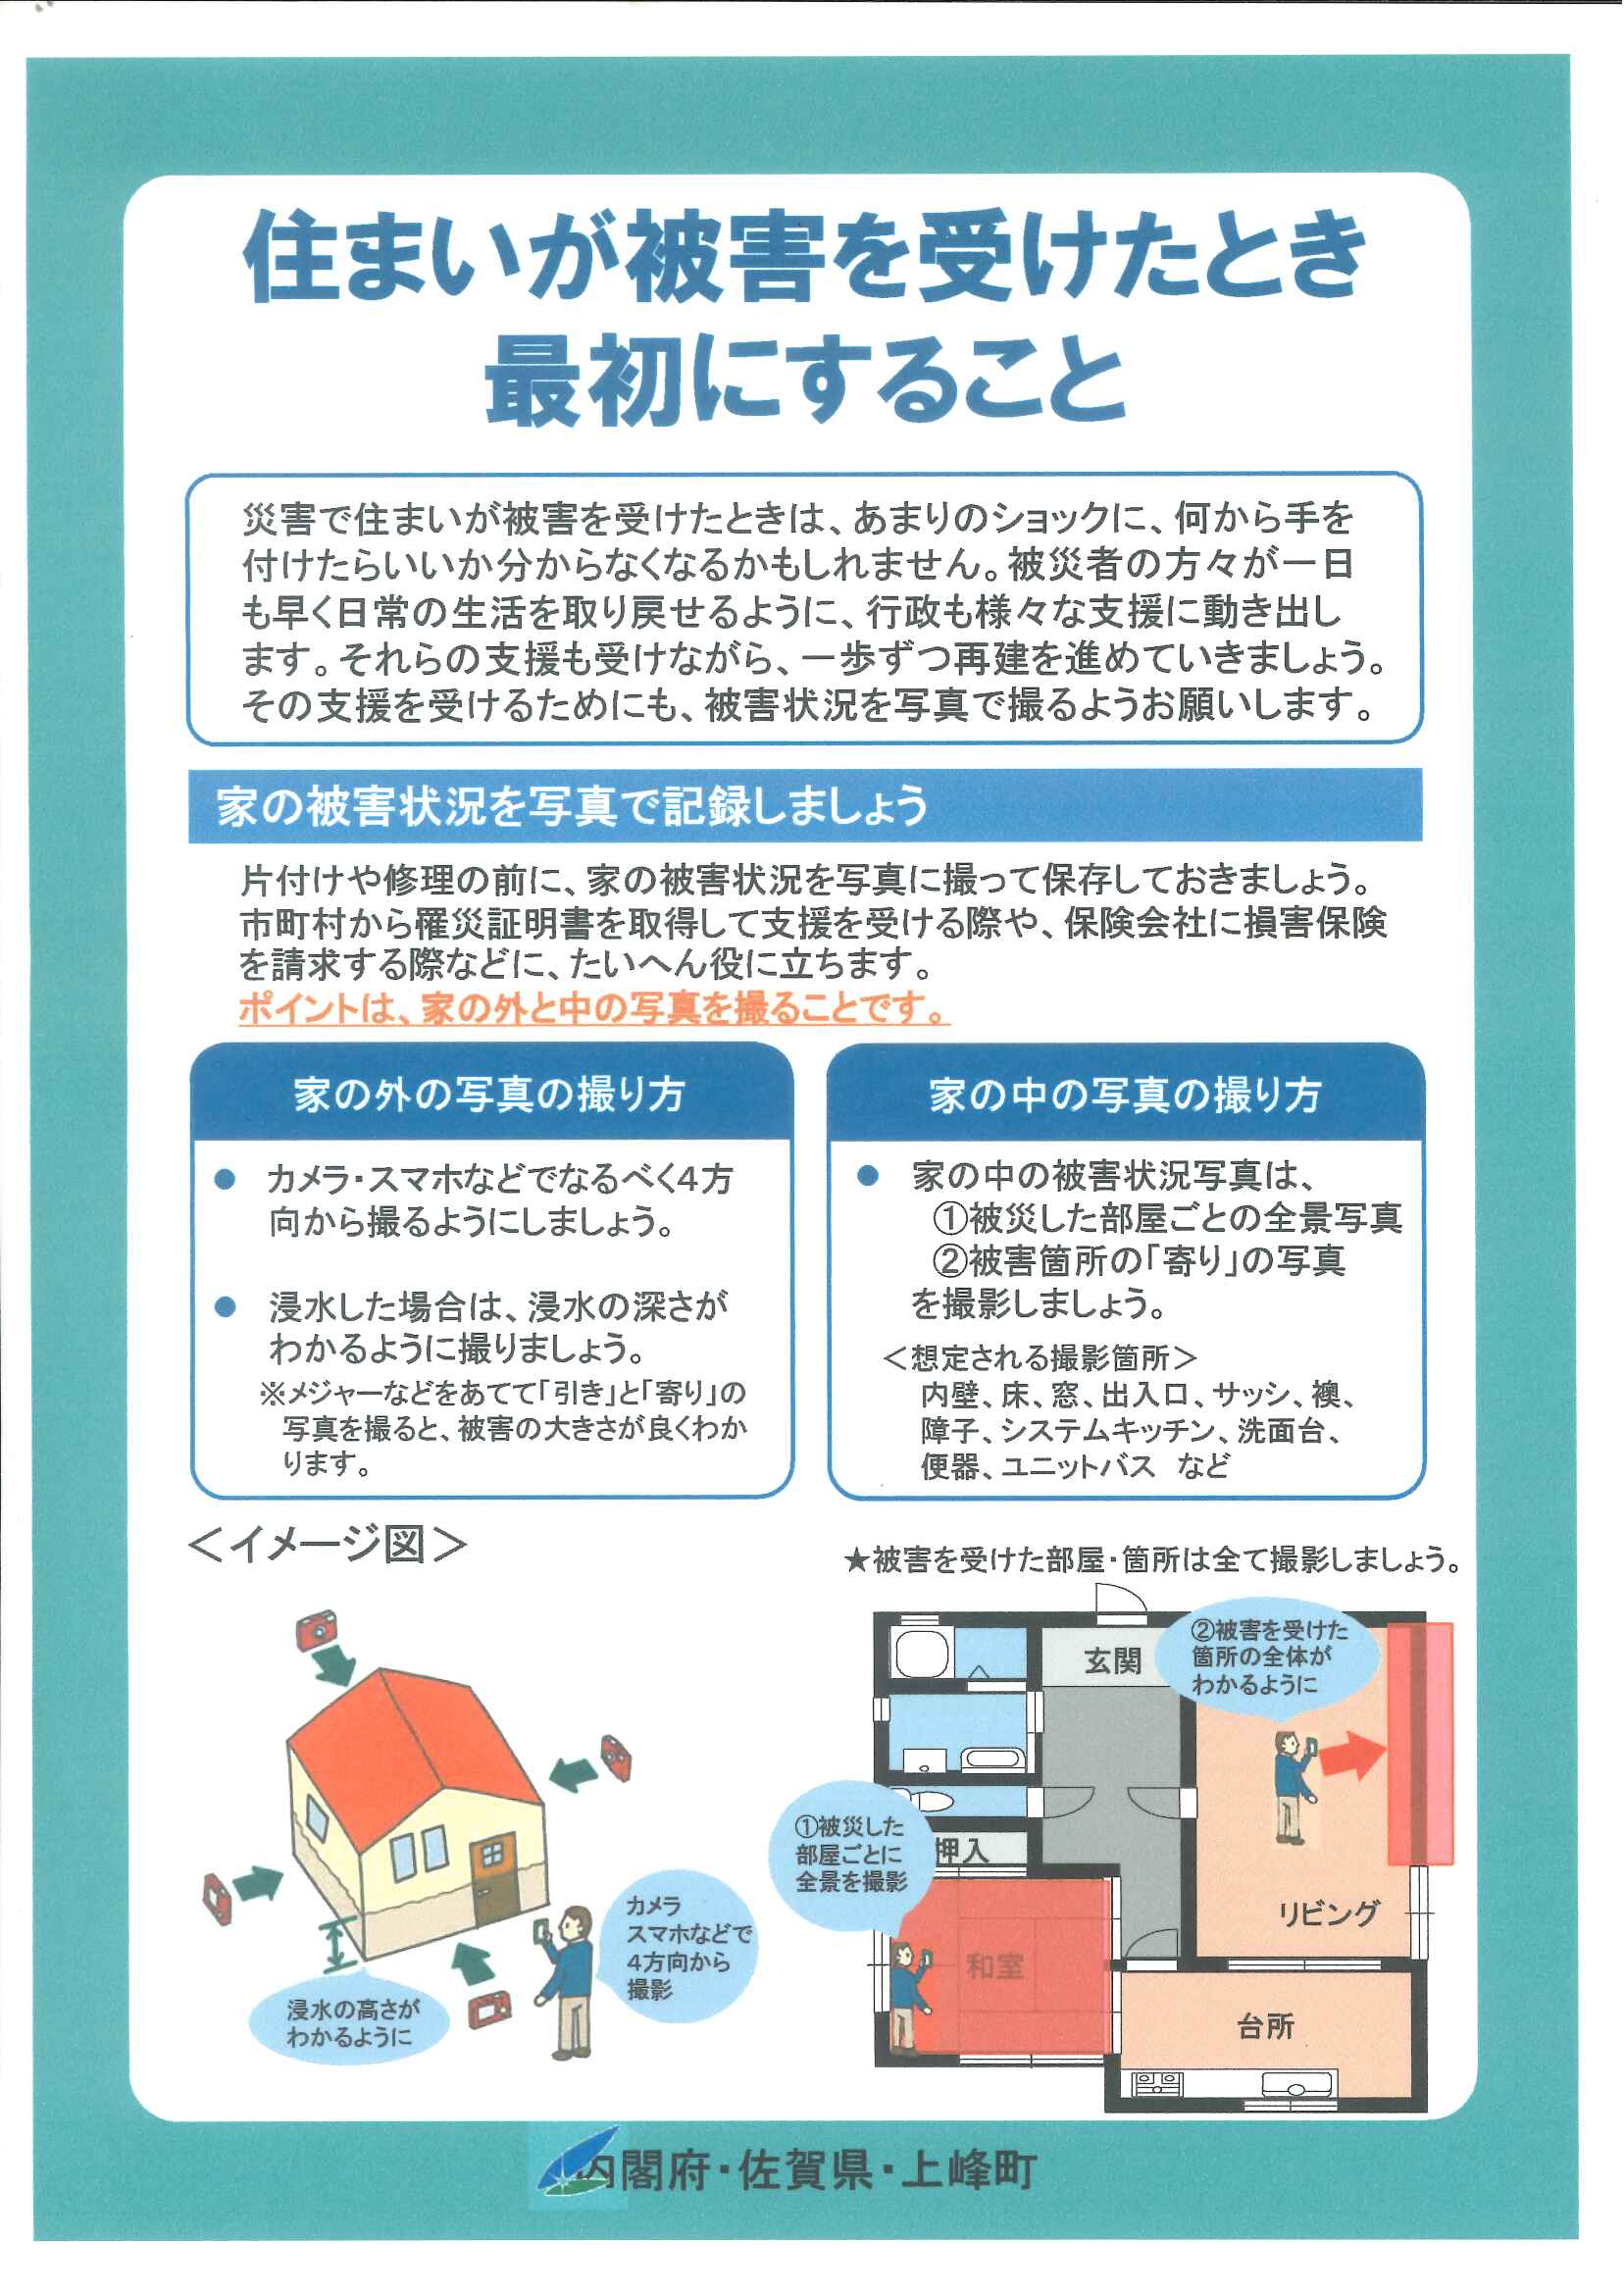 「令和３年8月11日からの大雨による災害に関する特別相談窓口」の設置について